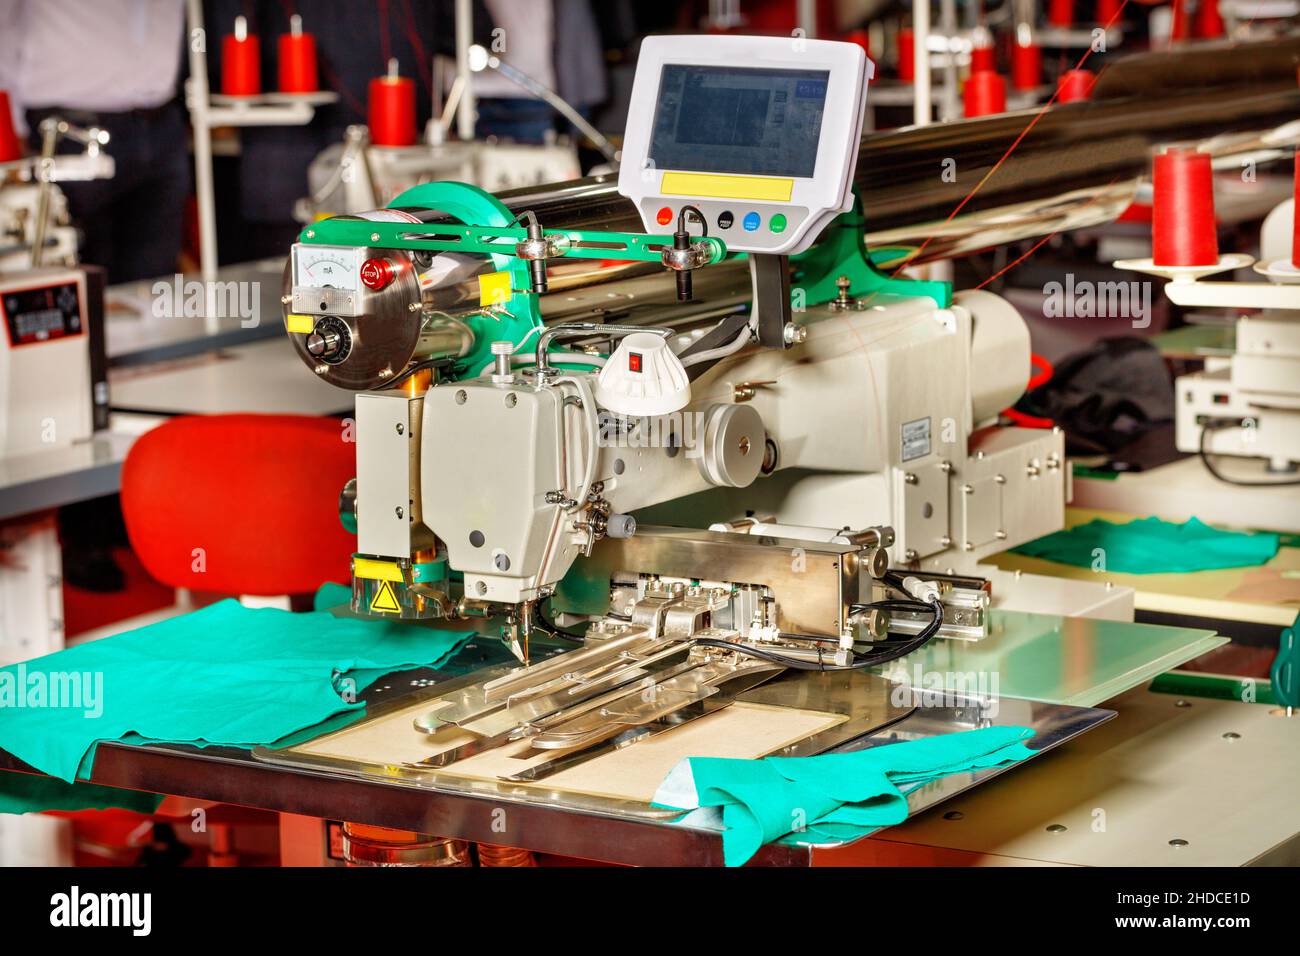 Attrezzatura di cucitura moderna in una fabbrica di cucitura, una macchina di cucitura con funzioni programmabili primo piano. Foto Stock